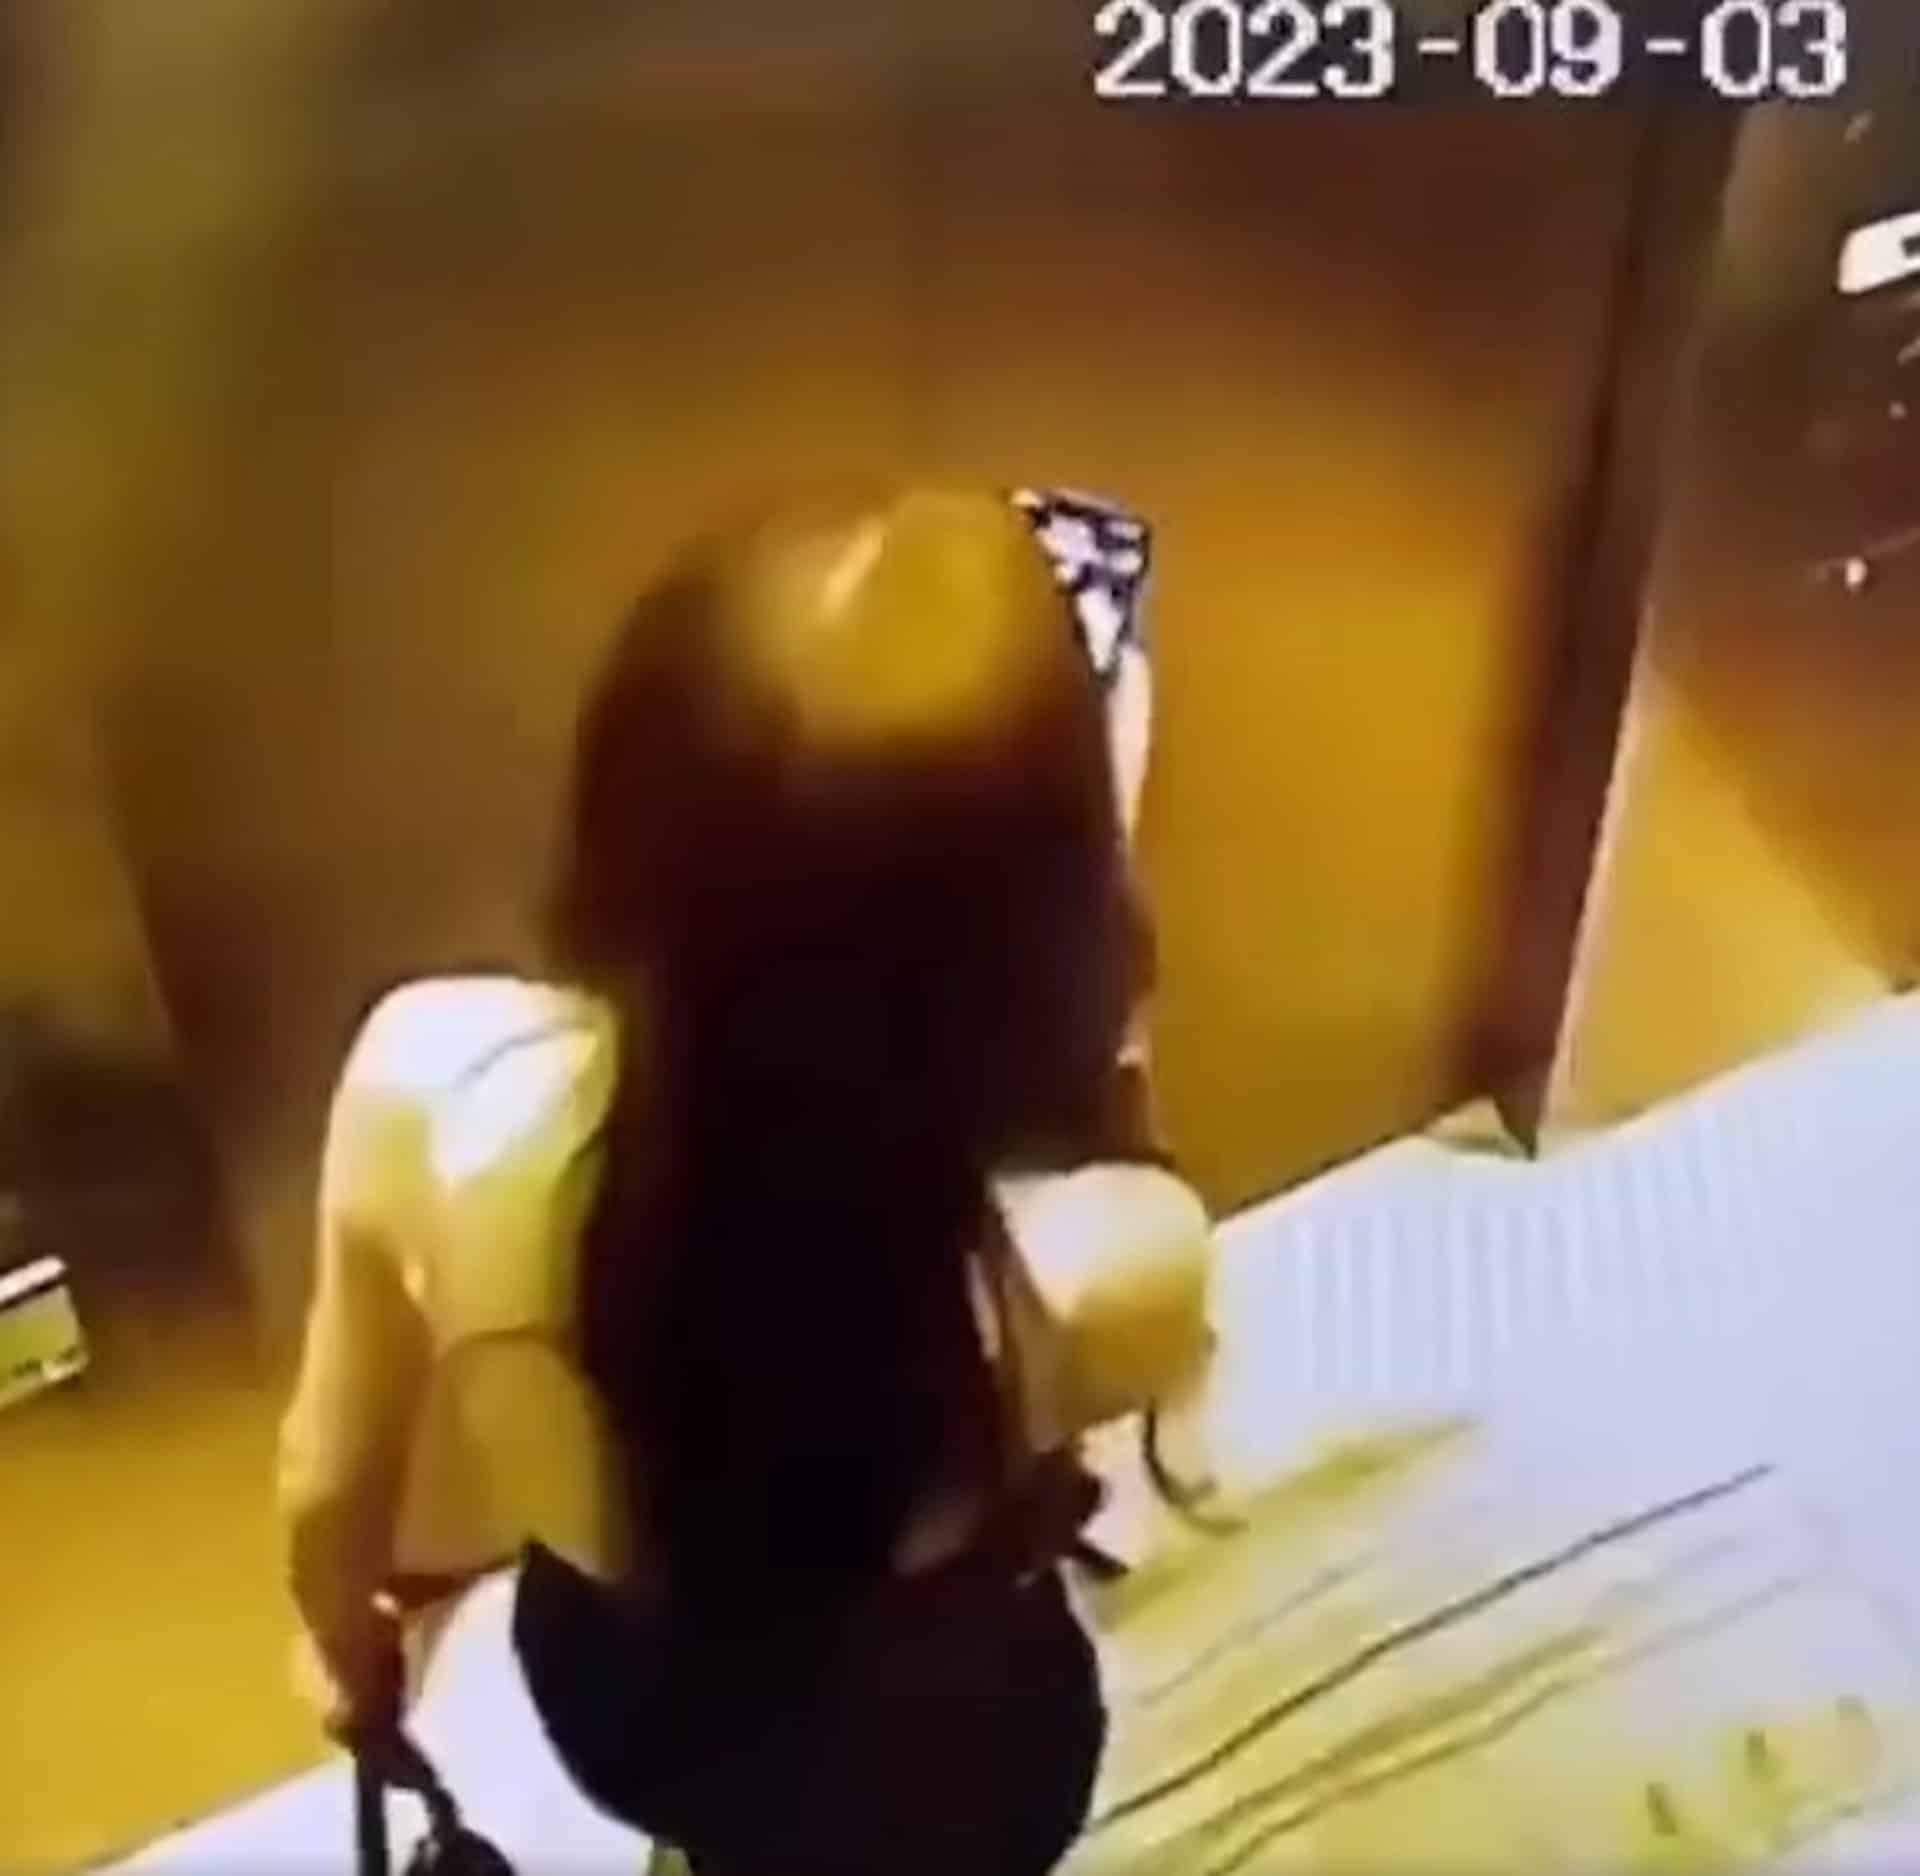 โรคจิต? หญิงสาวในลิฟต์ถูกชายยิง "น้ำ" ปริศนาใส่ด้านหลัง 3 ครั้งรวด